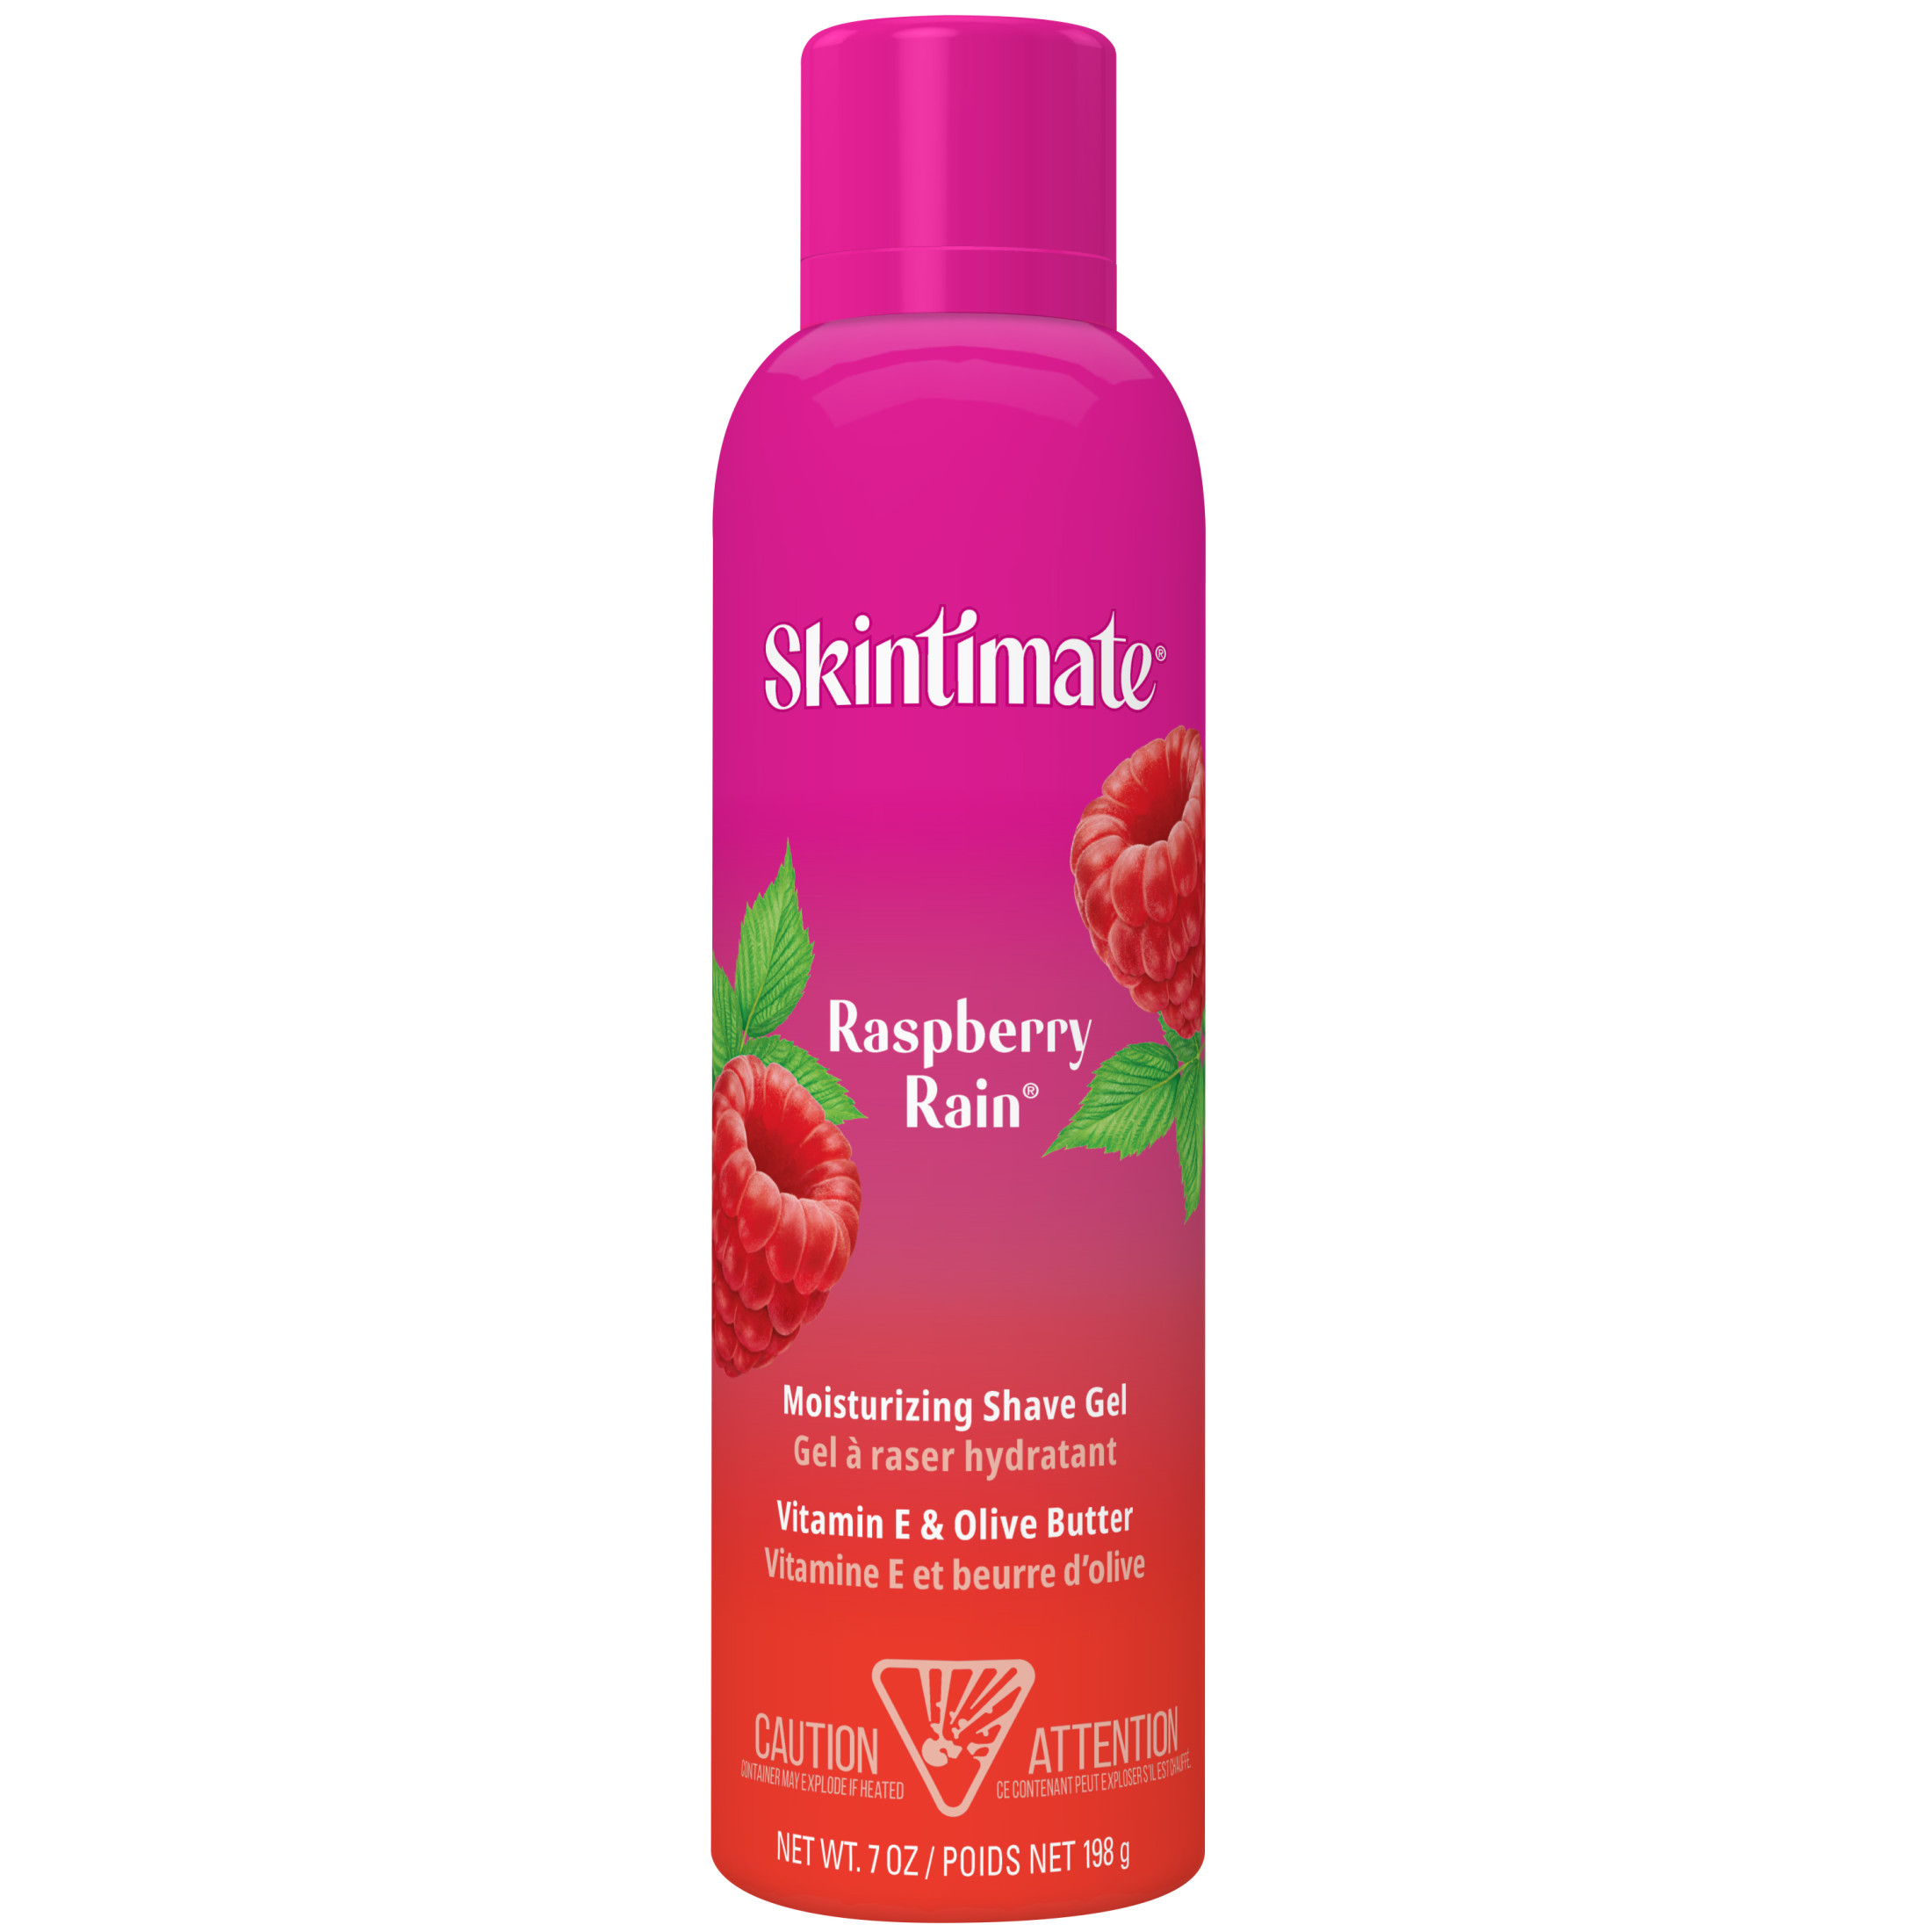 Skintimate Raspberry Rain Shave Gel for Women, Moisturizing Shaving Cream, 7 oz - image 3 of 10